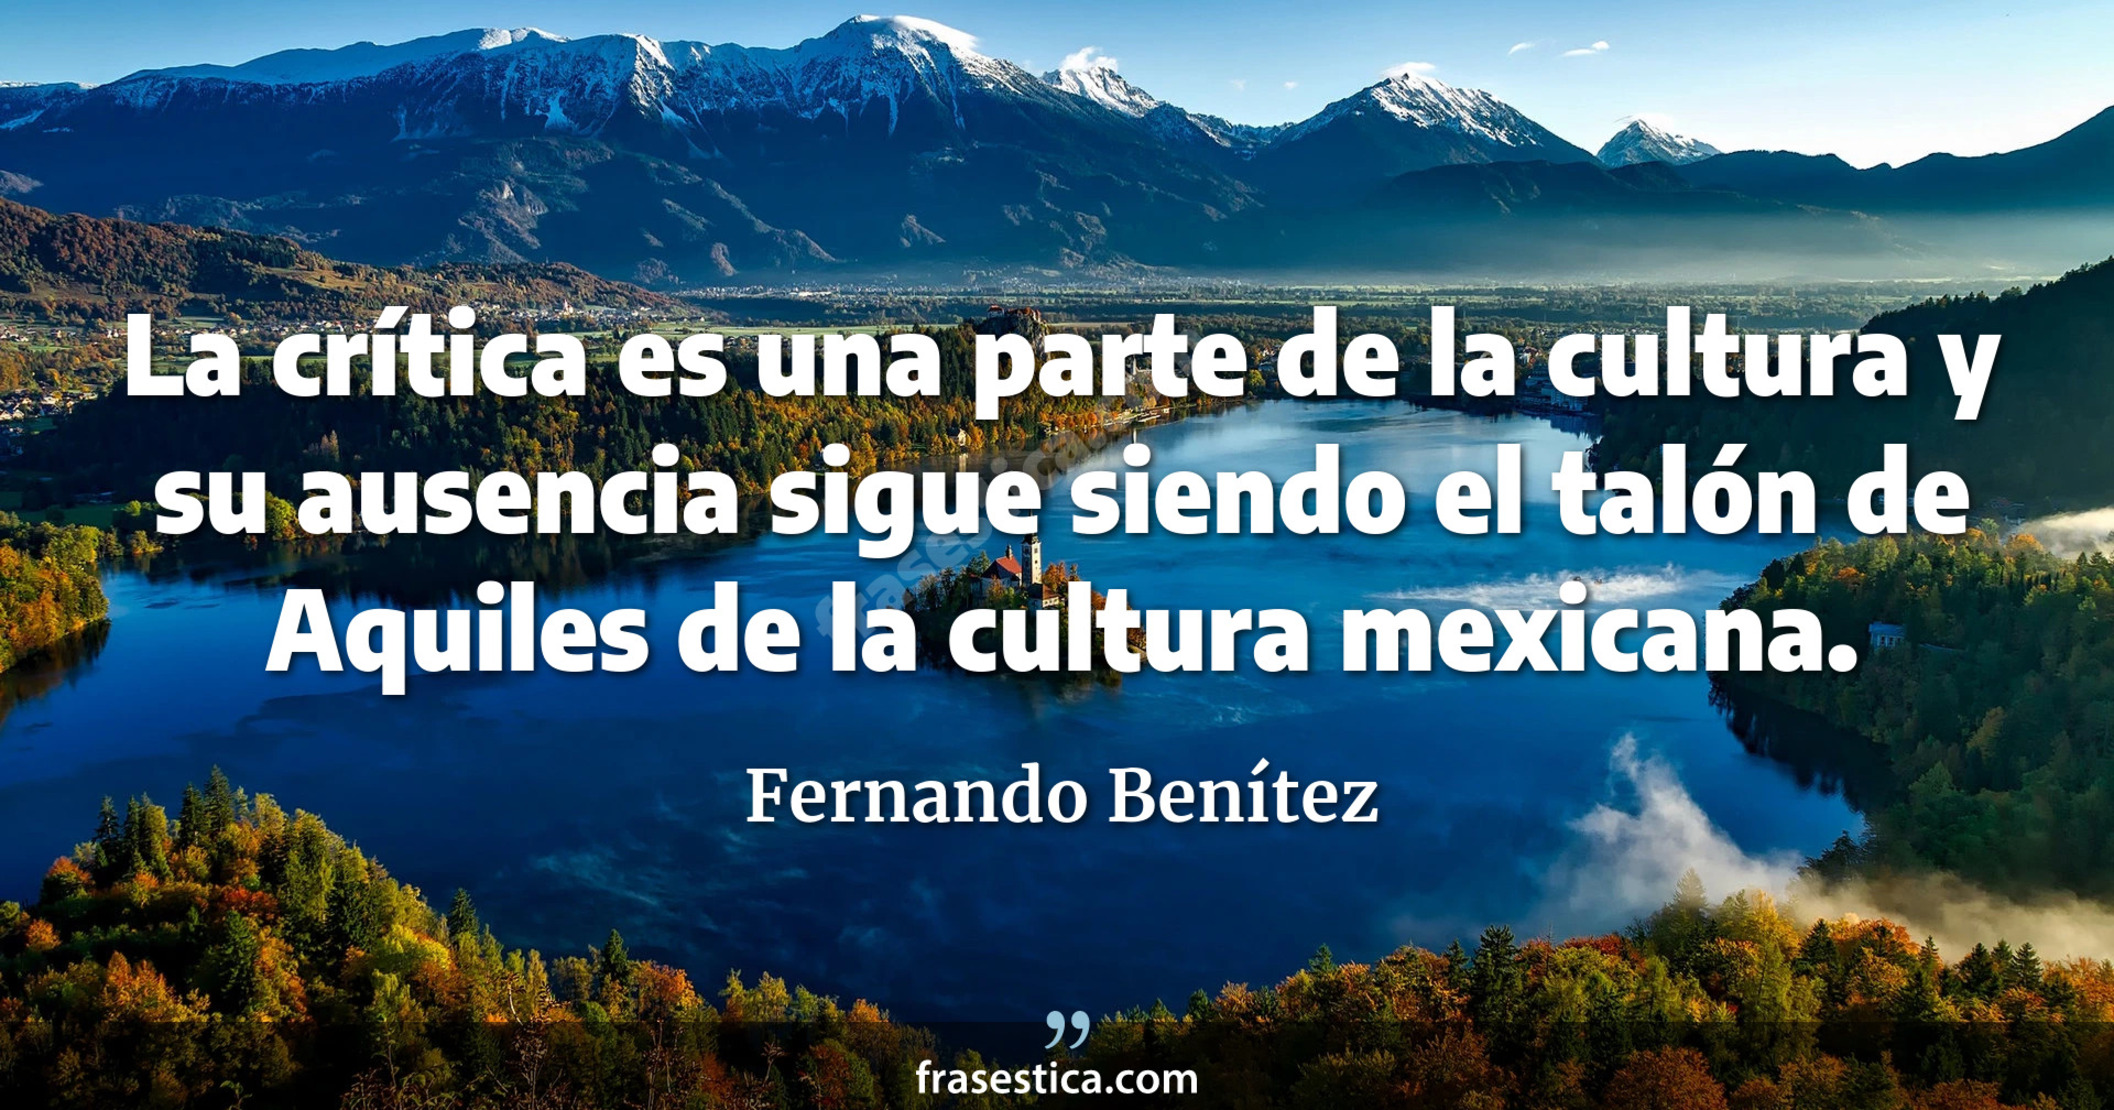 La crítica es una parte de la cultura y su ausencia sigue siendo el talón de Aquiles de la cultura mexicana. - Fernando Benítez